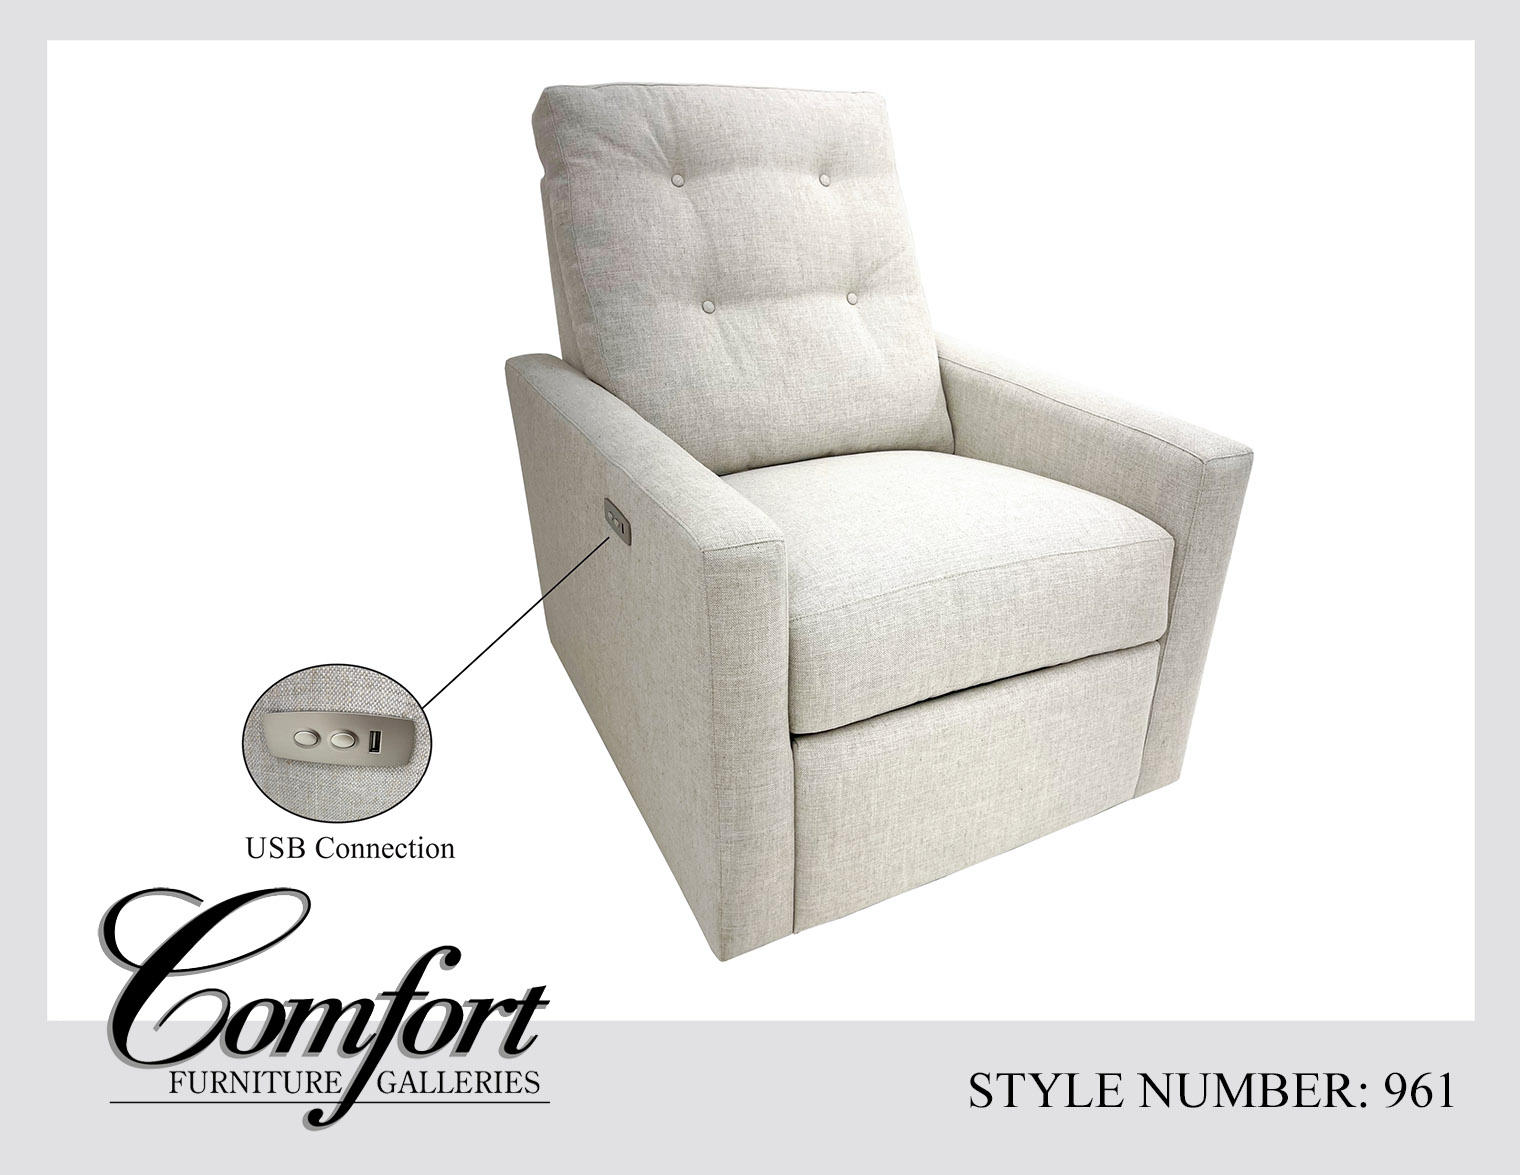 Comfort Furniture Galleries San Diego (858)549-9990